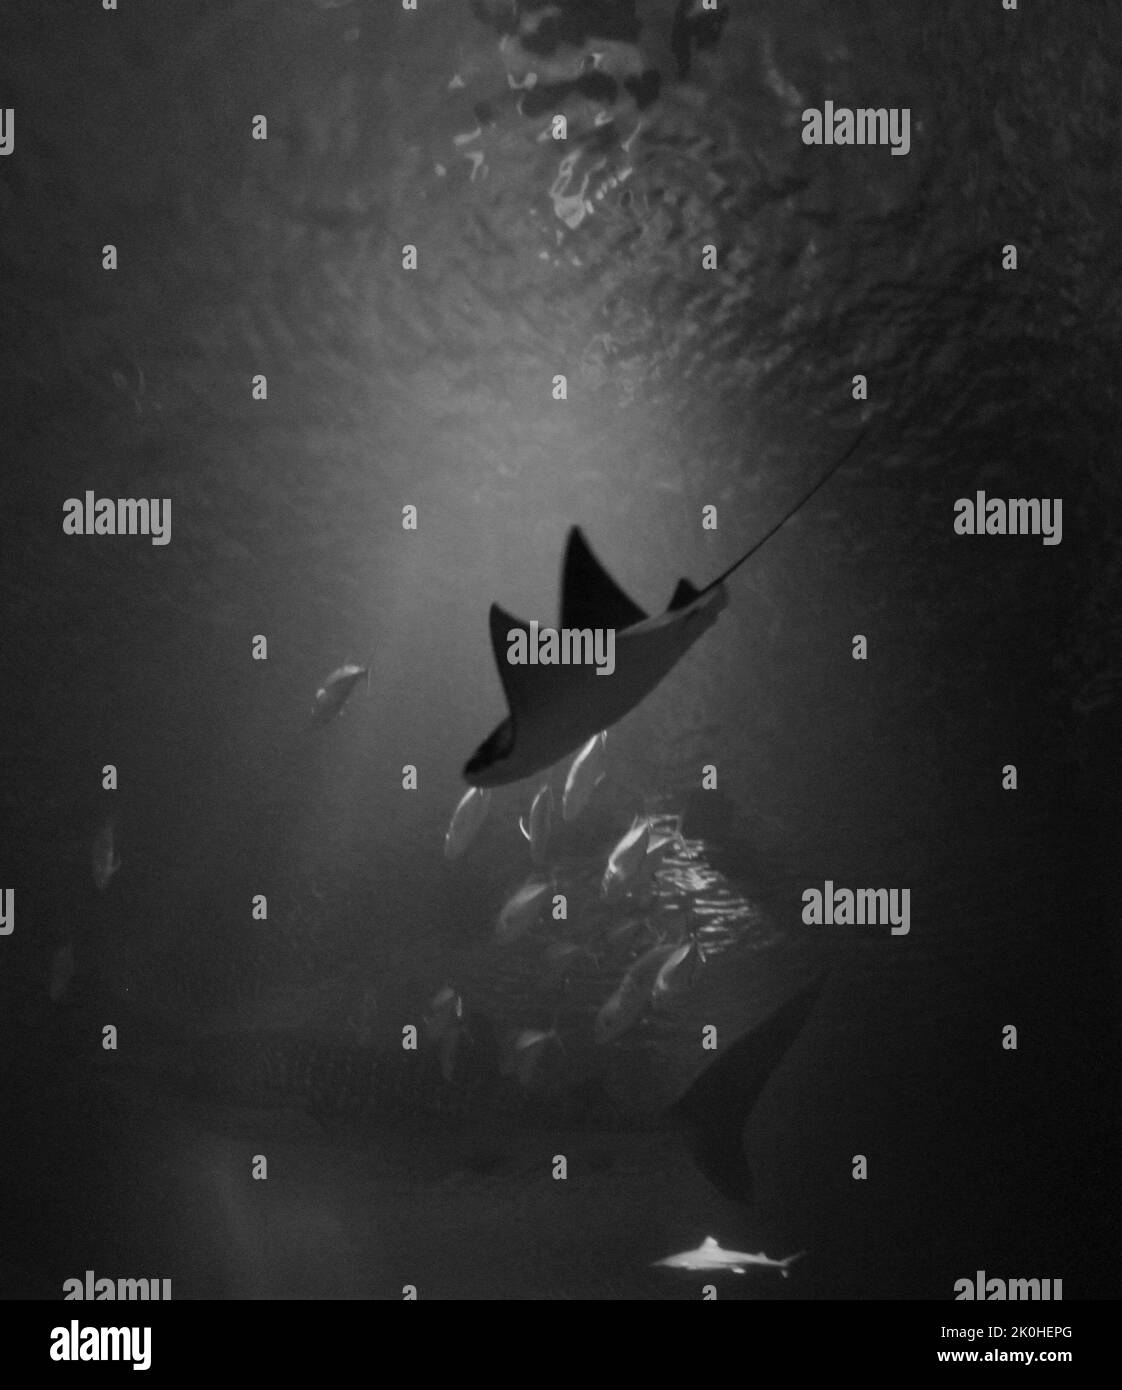 Uno scatto in scala di grigi di uno squalo balena all'interno dell'acquario Foto Stock